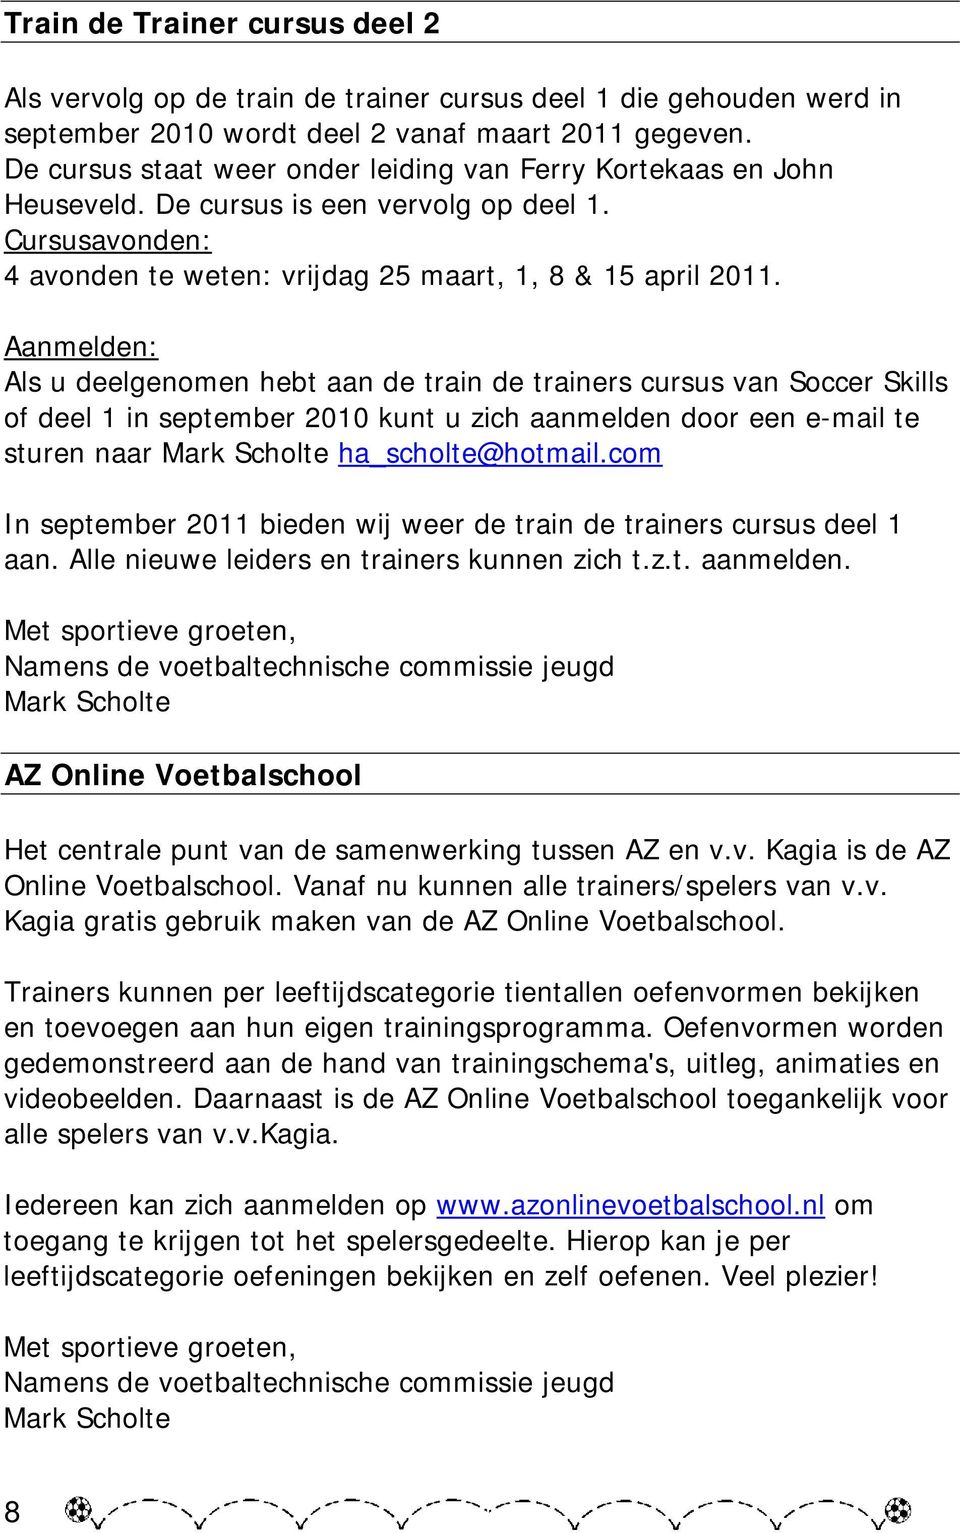 Aanmelden: Als u deelgenomen hebt aan de train de trainers cursus van Soccer Skills of deel 1 in september 2010 kunt u zich aanmelden door een e-mail te sturen naar Mark Scholte ha_scholte@hotmail.